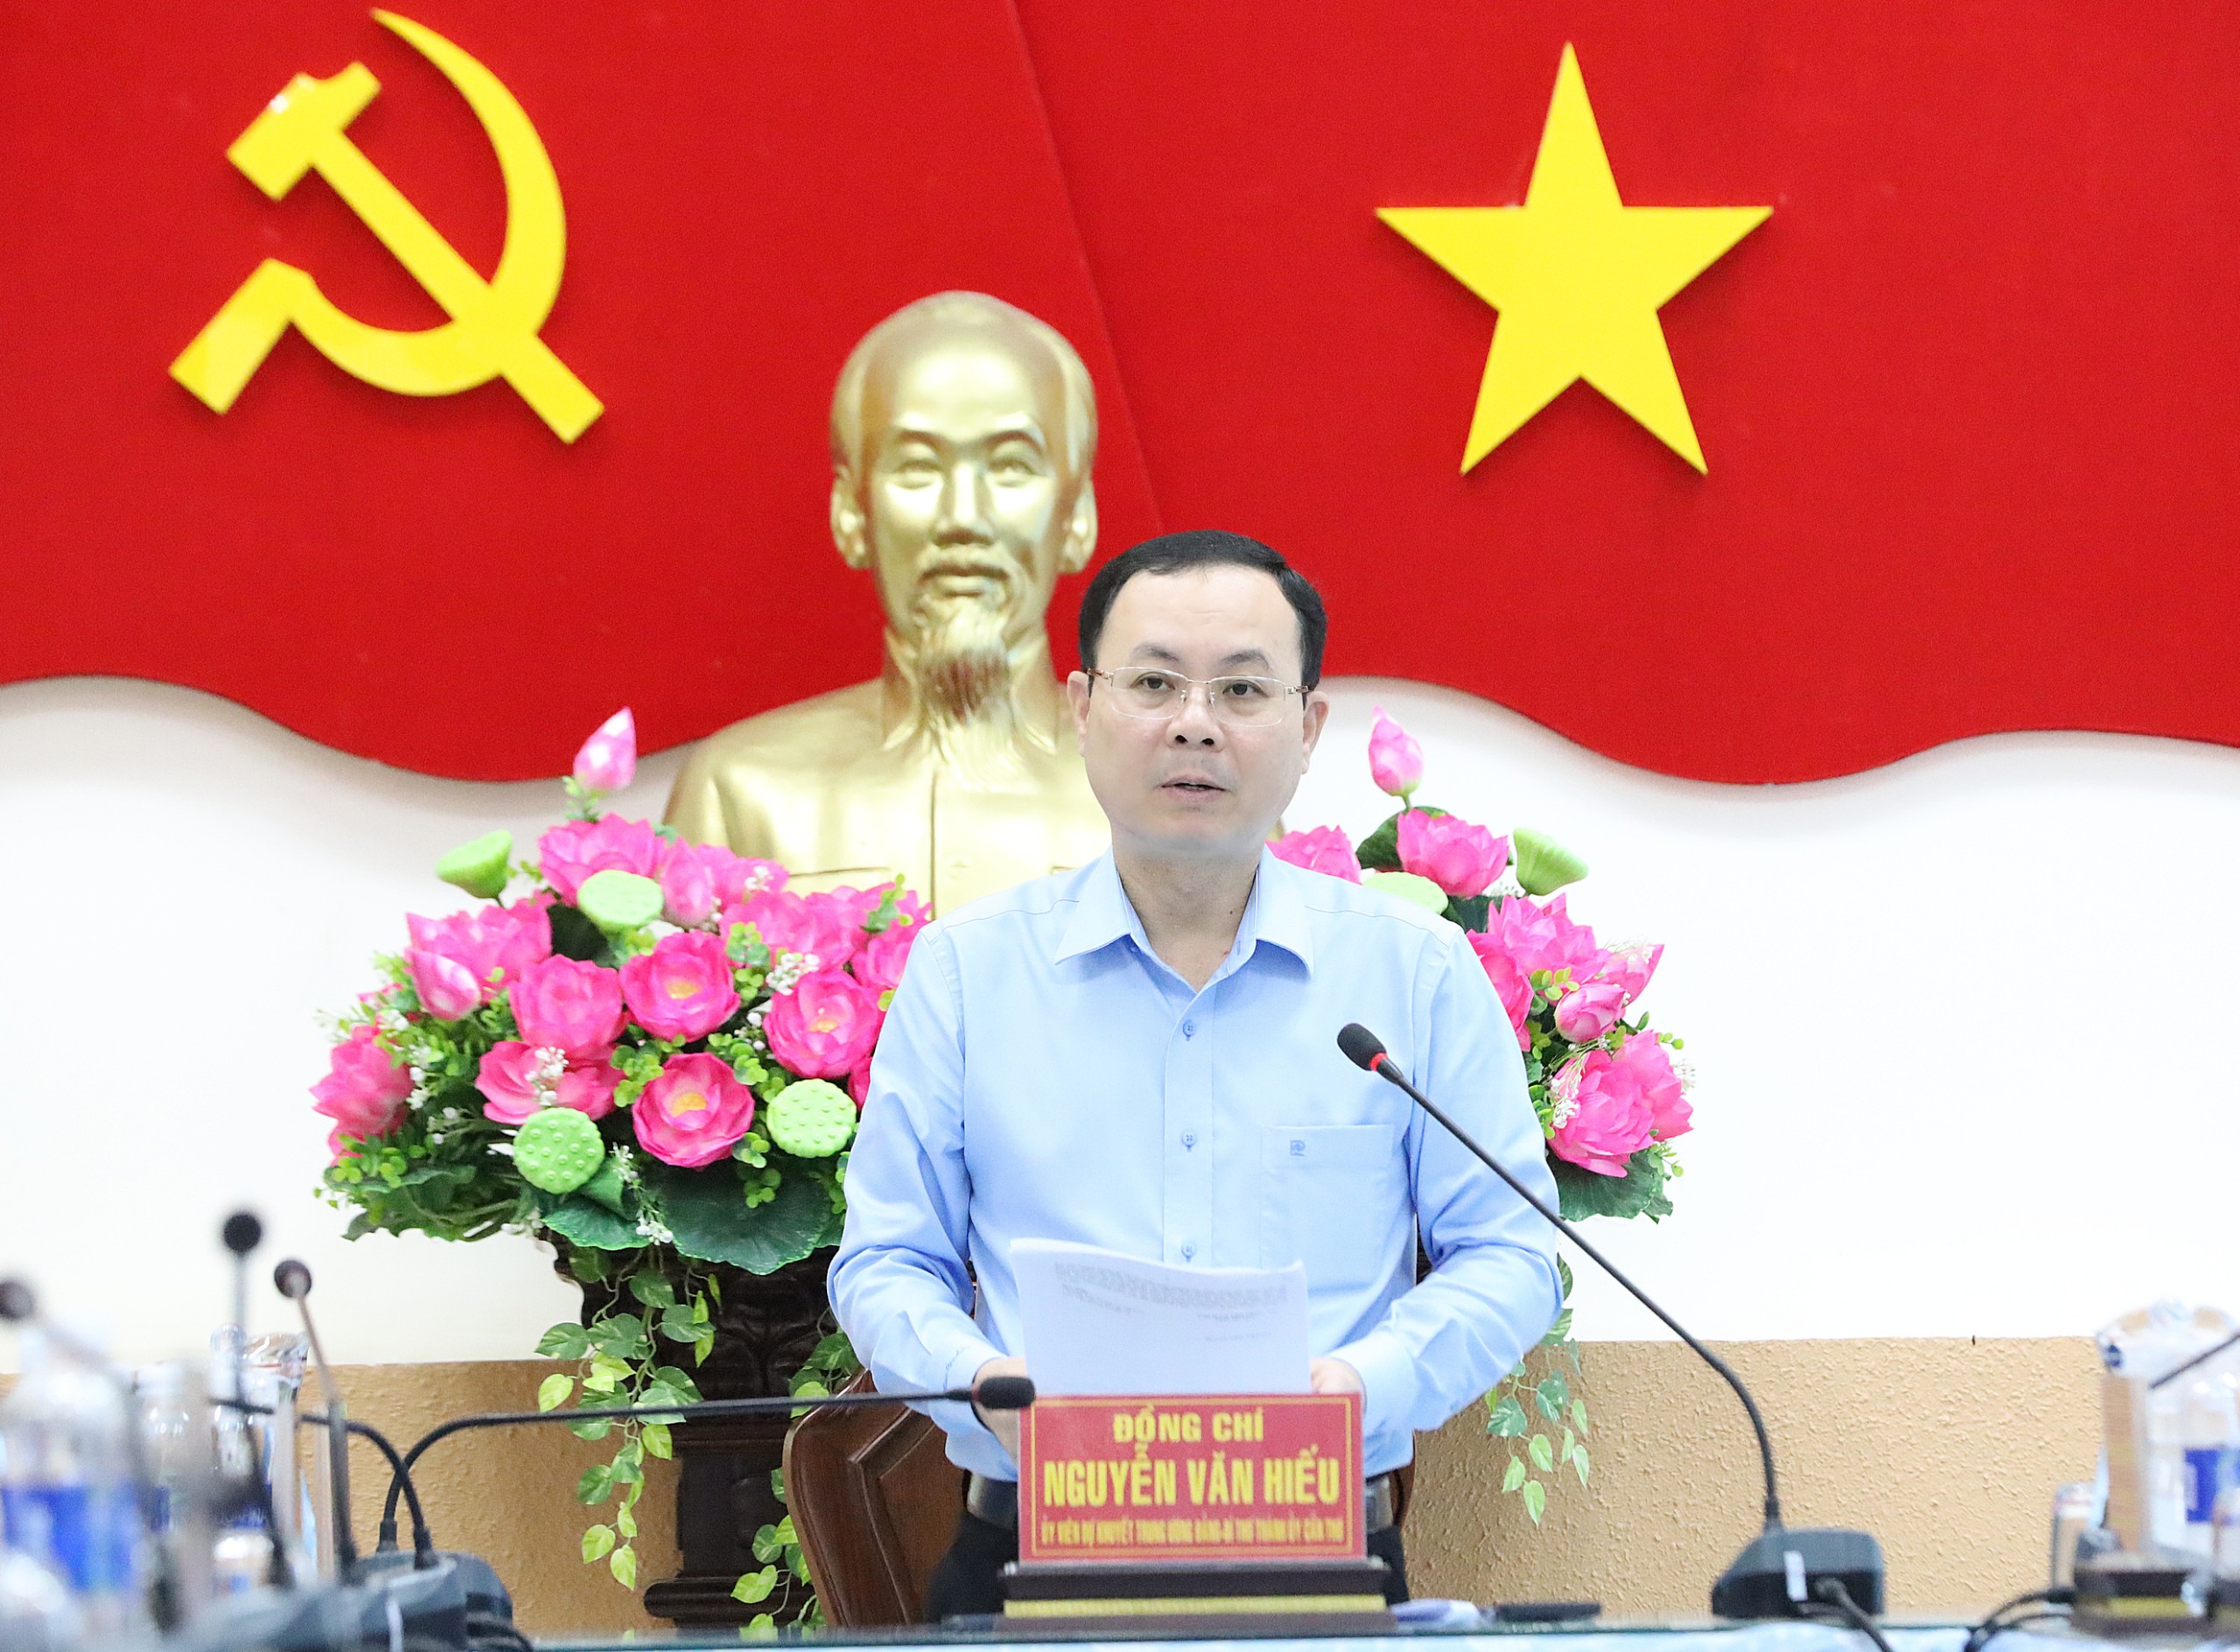 Ông Nguyễn Văn Hiếu - Ủy viên dự khuyết BCH Trung ương Đảng, Bí thư Thành ủy Cần Thơ phát biểu chỉ đạo tại buổi làm việc.